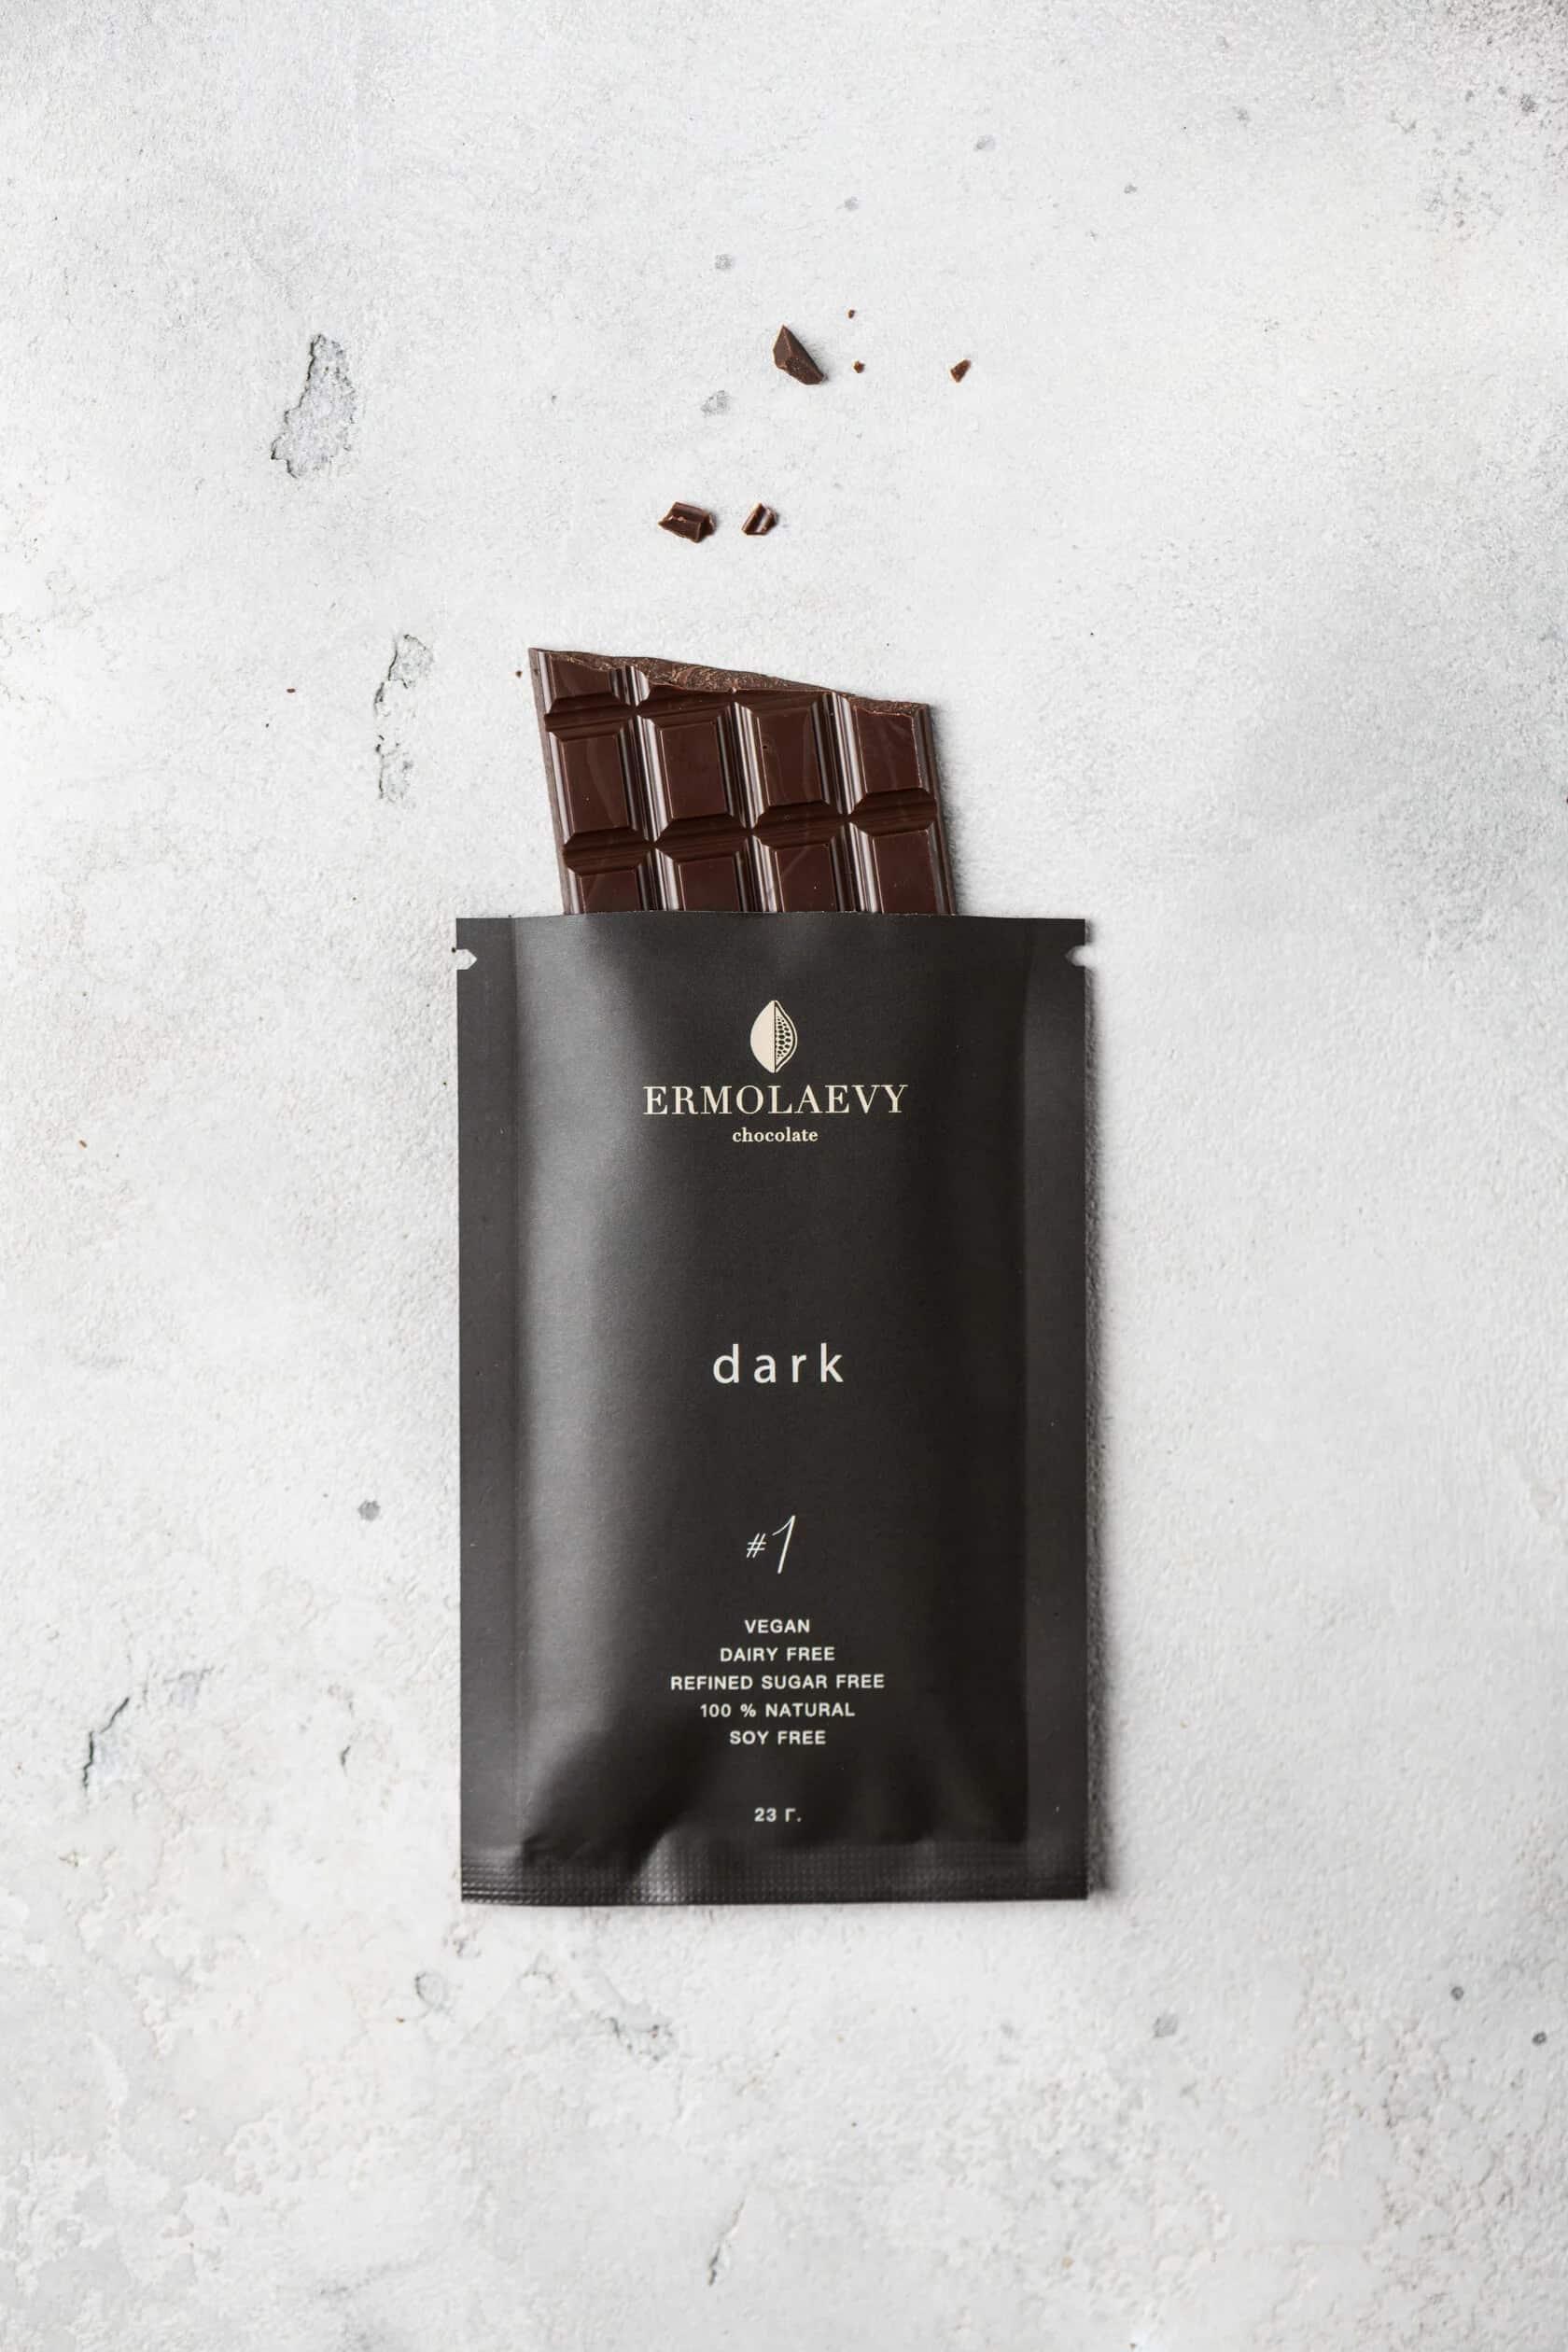 dark chocolate #1